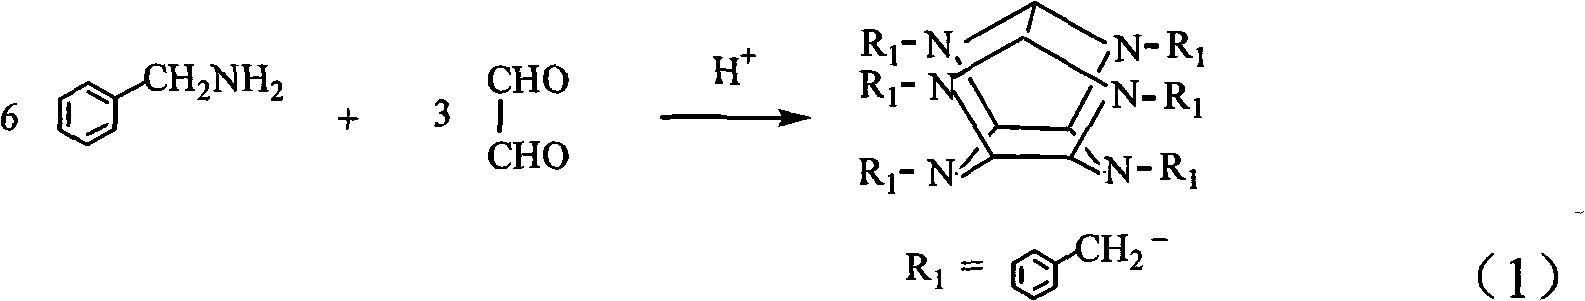 Synthetic method of hexabenzylhexaazaisowurtzitane